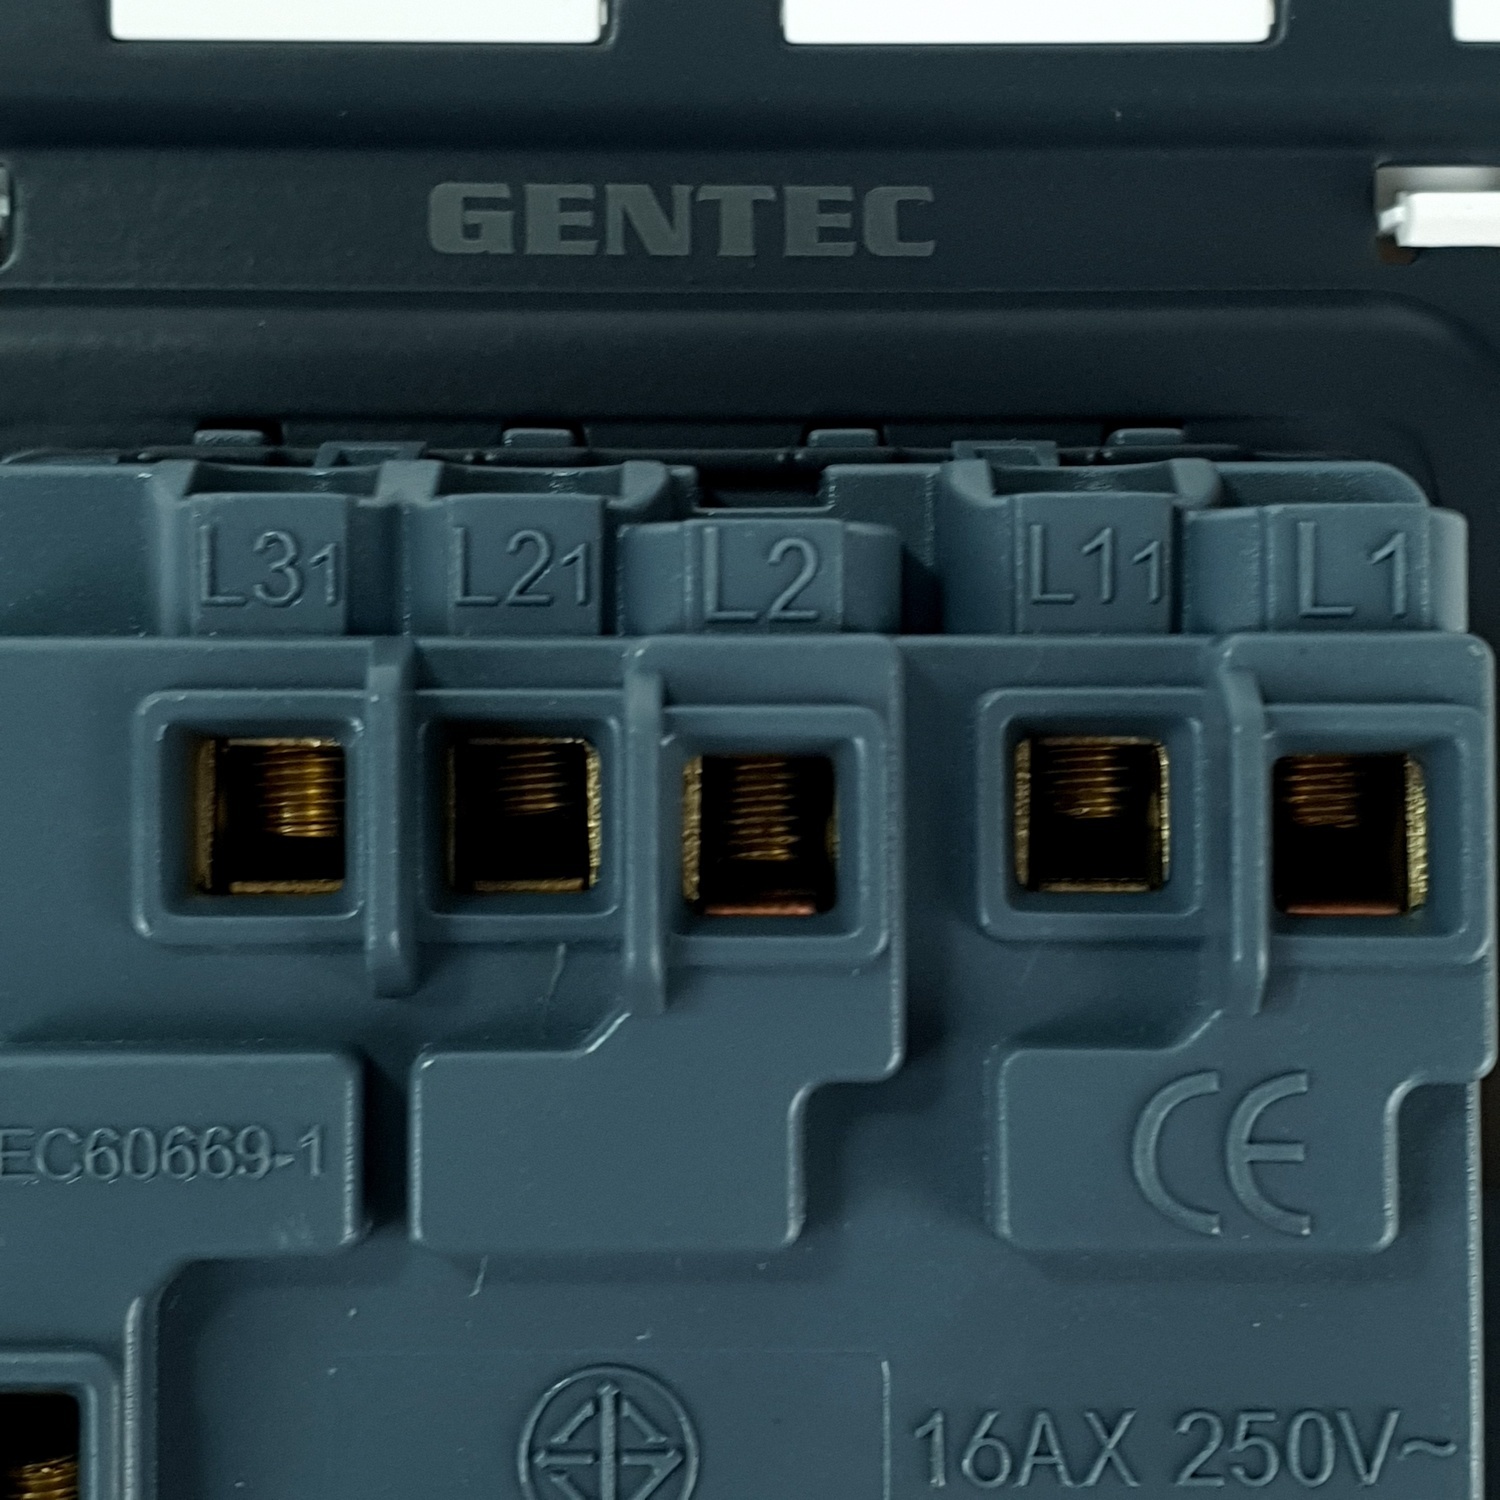 Gentec สวิตซ์ทางเดียว 3 ช่อง รุ่น 86W-05 สีขาว